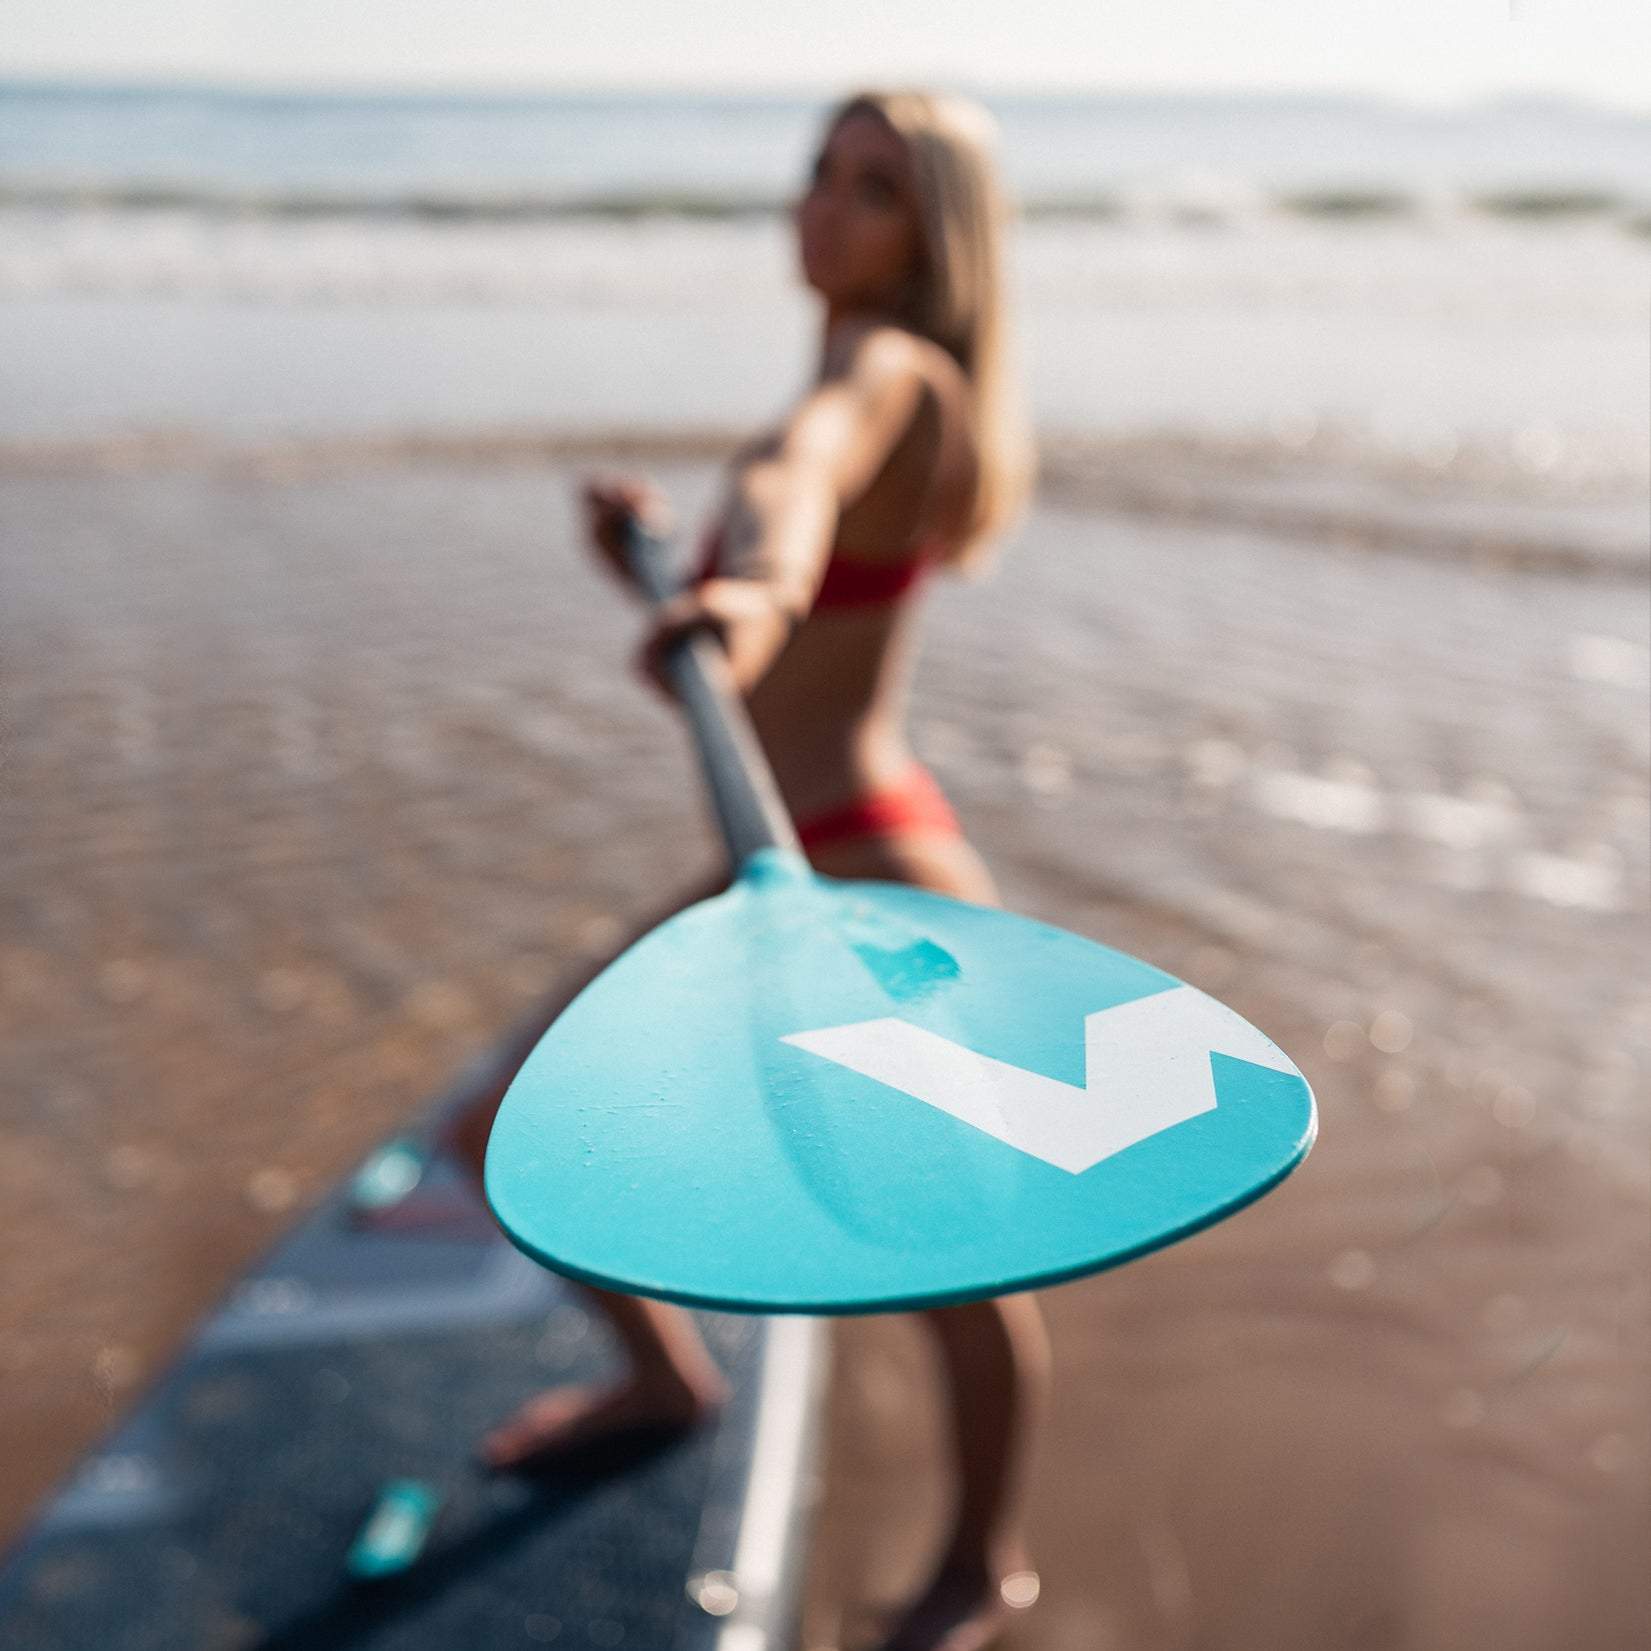 Aluminium Paddle | Tourer, Cruiser, Woody SUPs | Orange - Wave Sups Inflatable Paddle boards